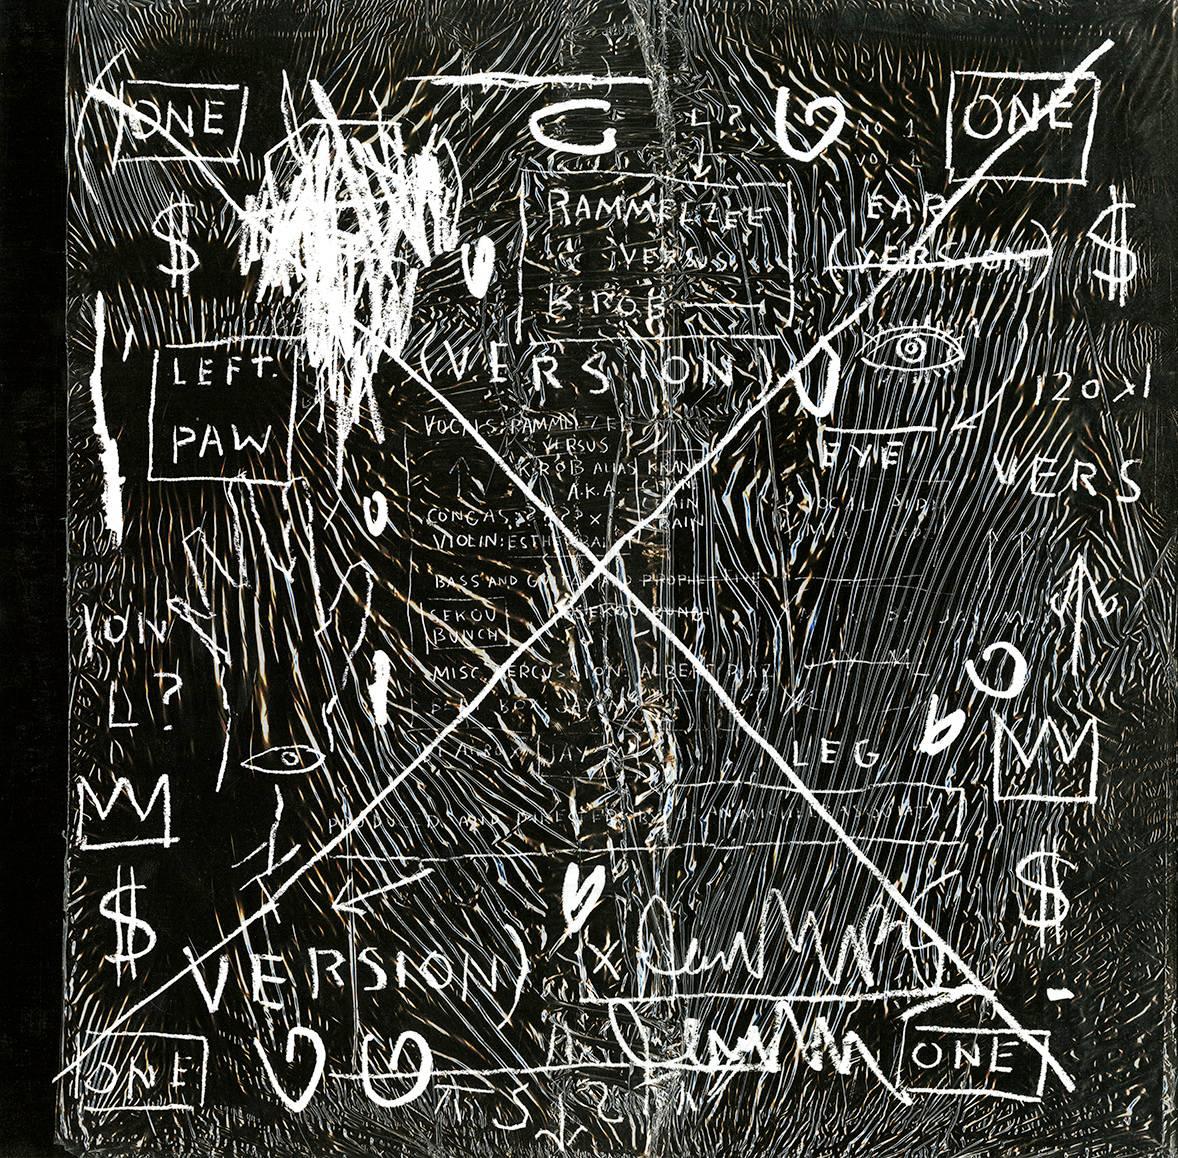 Basquiat Beatp Bop Plattenkunst und Poster 1983/2005 (Basquiat Plattenkunst) (Pop-Art), Art, von Jean-Michel Basquiat